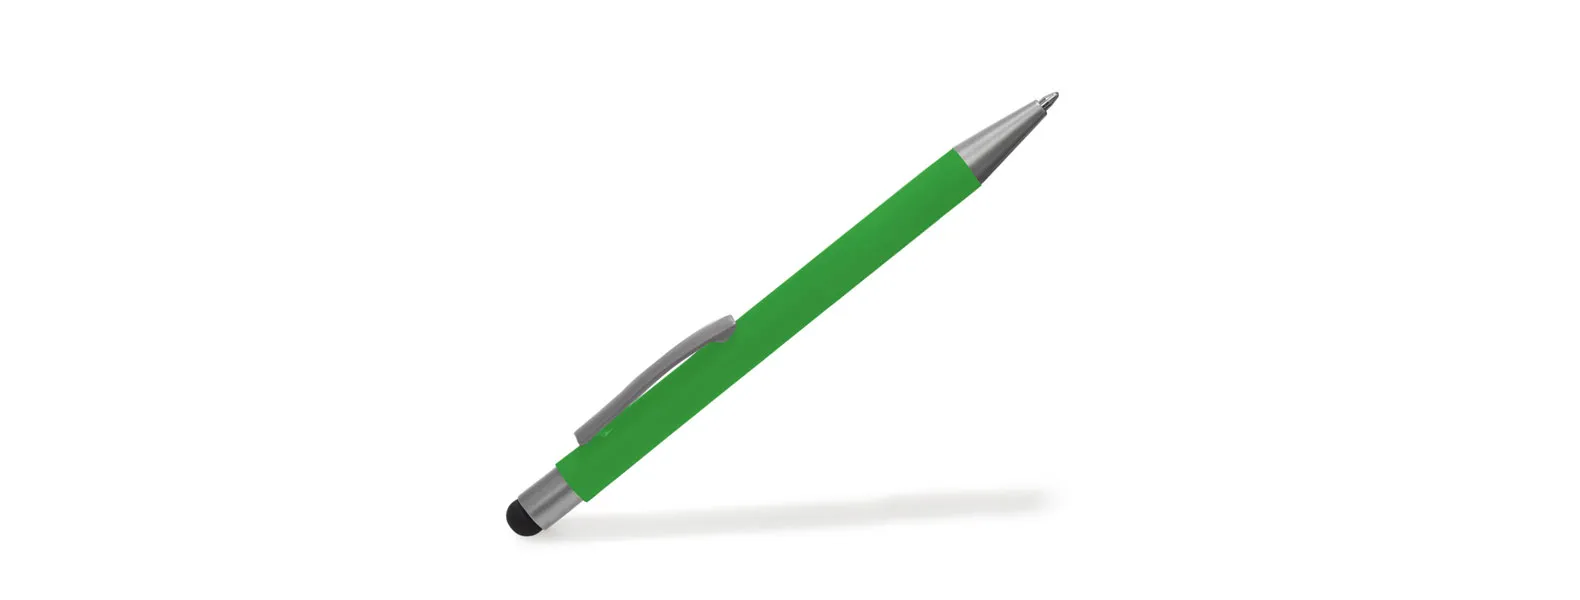 Caneta esferográfica em alumínio verde. Conta com acabamento fosco, clipe e ponteira touch em silicone preto. Carga esferográfica azul acionada por um click na extremidade da caneta.